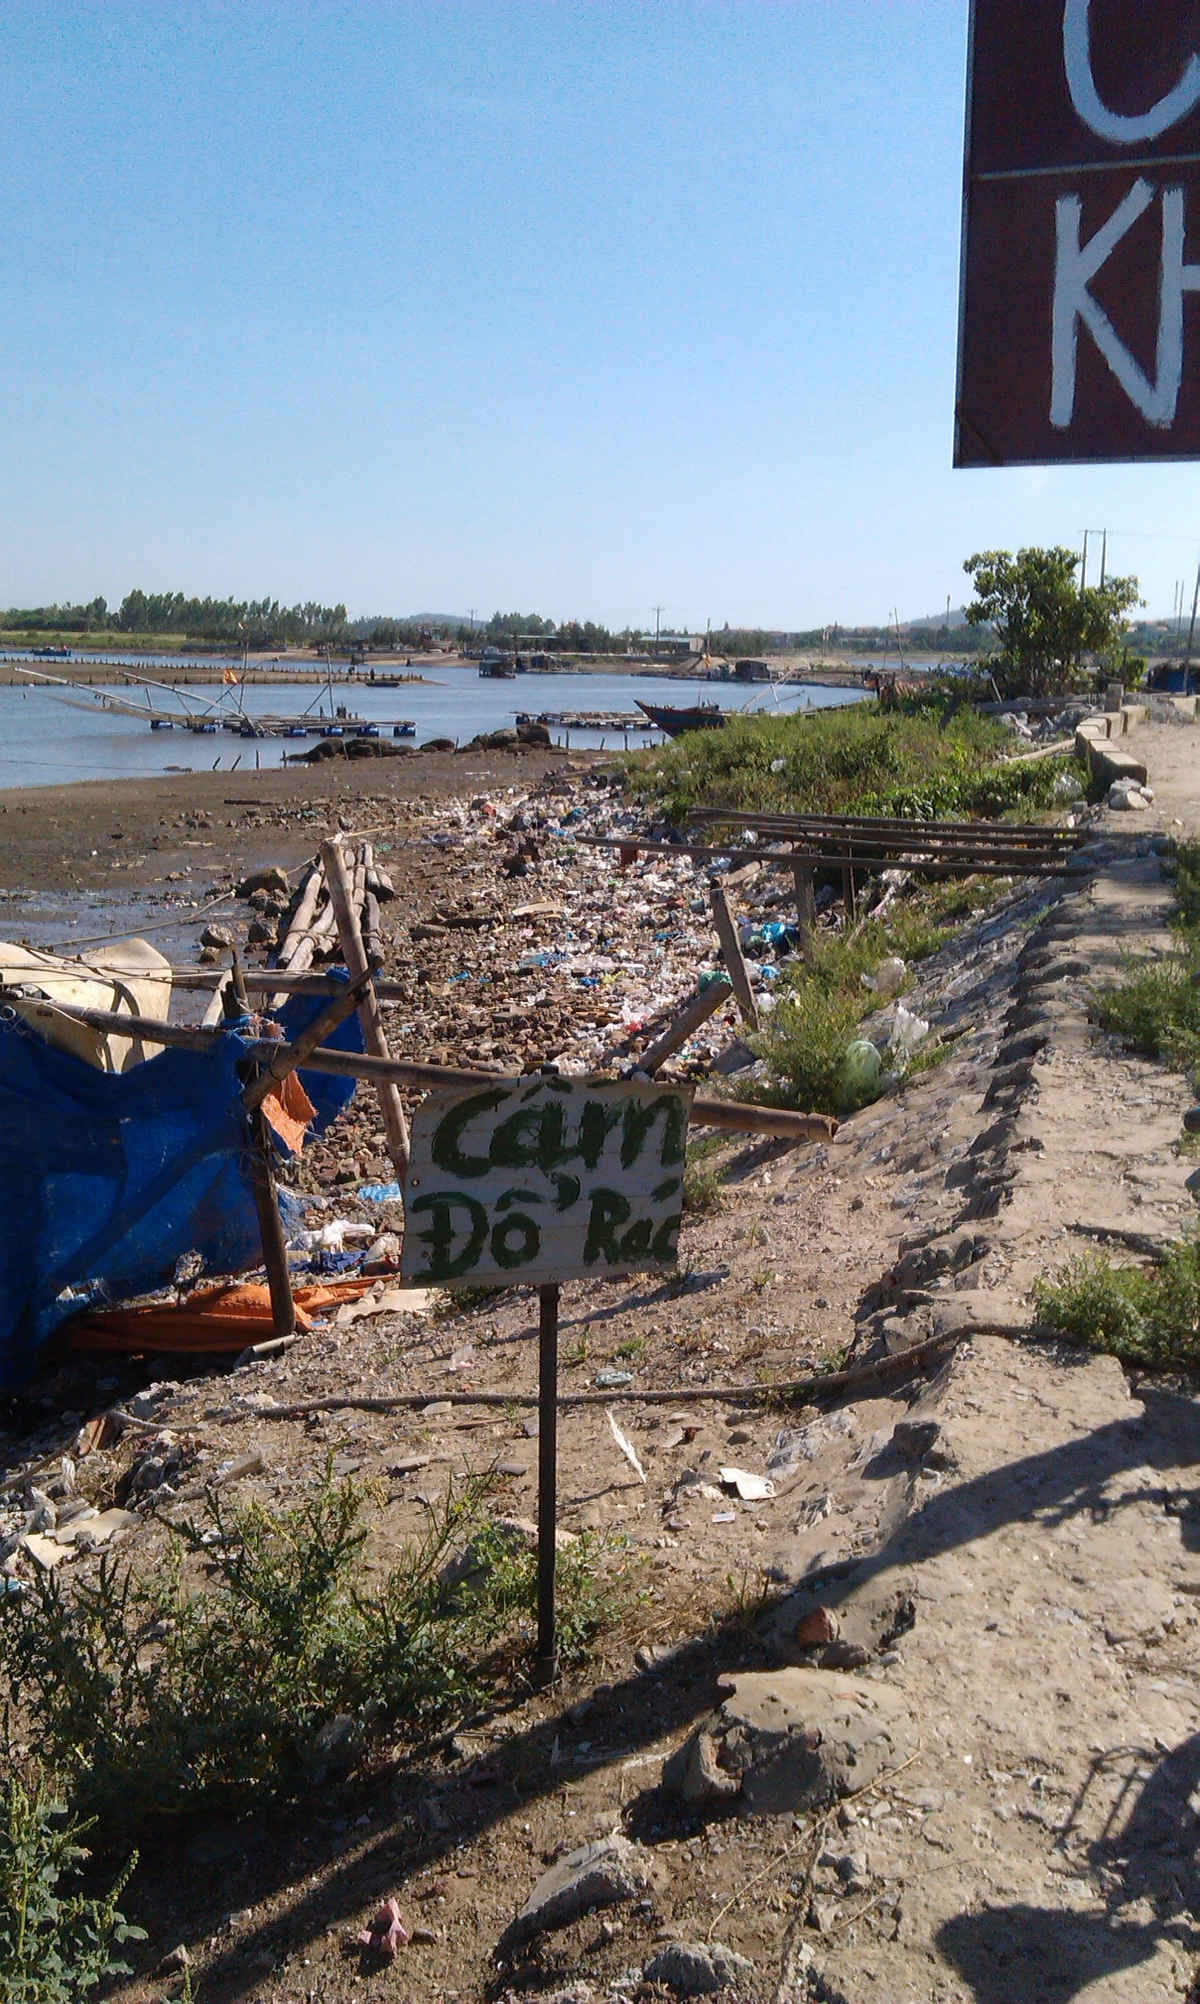 Mặc dù có biển cấm đổ rác, thế nhưng rác vẫn bị đổ tràn lan.